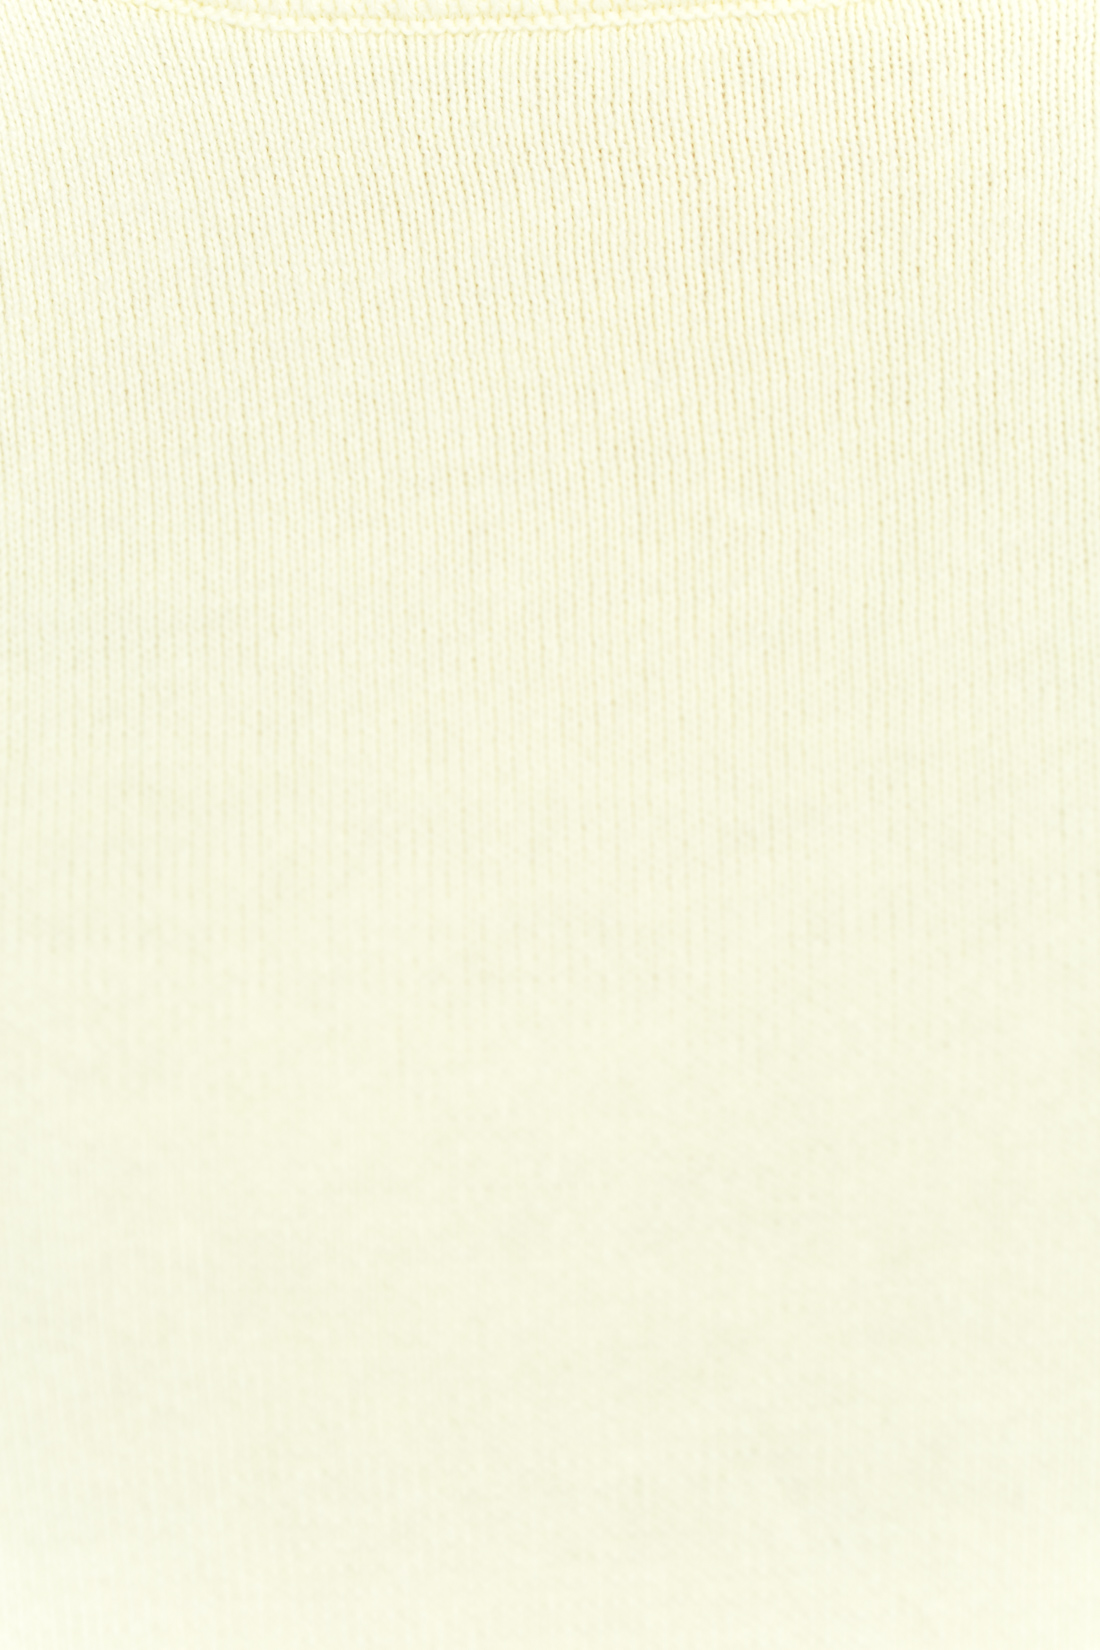 Базовый джемпер с коротким рукавом (арт. baon B137202), размер M, цвет белый Базовый джемпер с коротким рукавом (арт. baon B137202) - фото 3